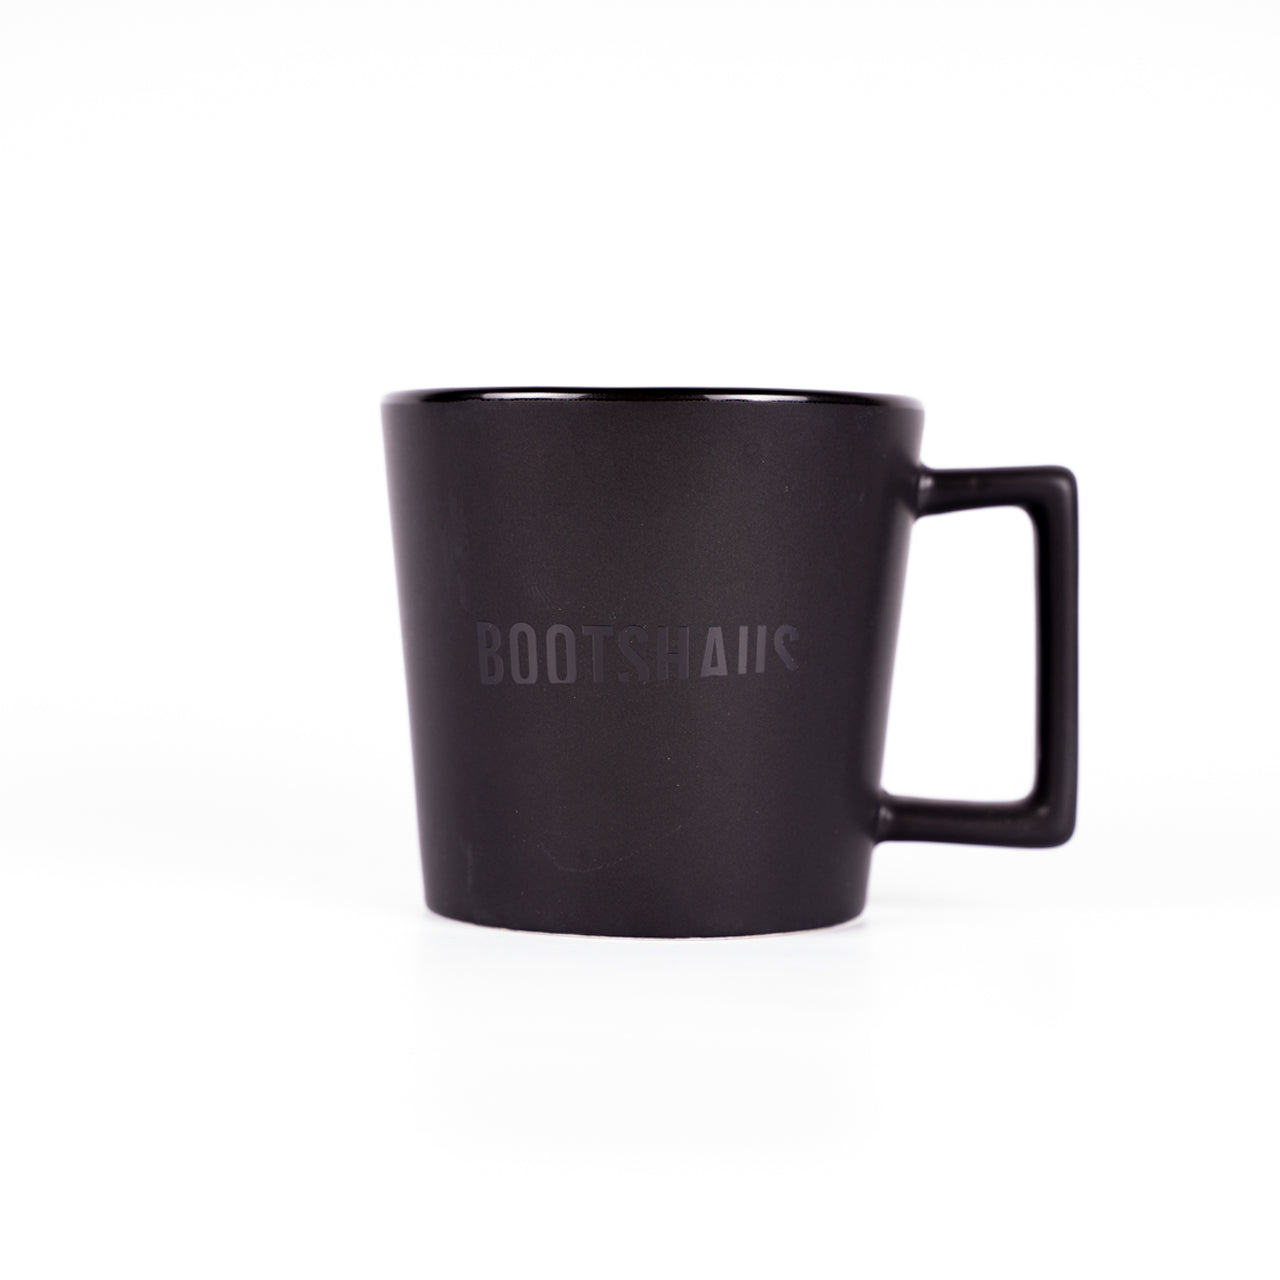 Bootshaus - Black on Black Mug V2